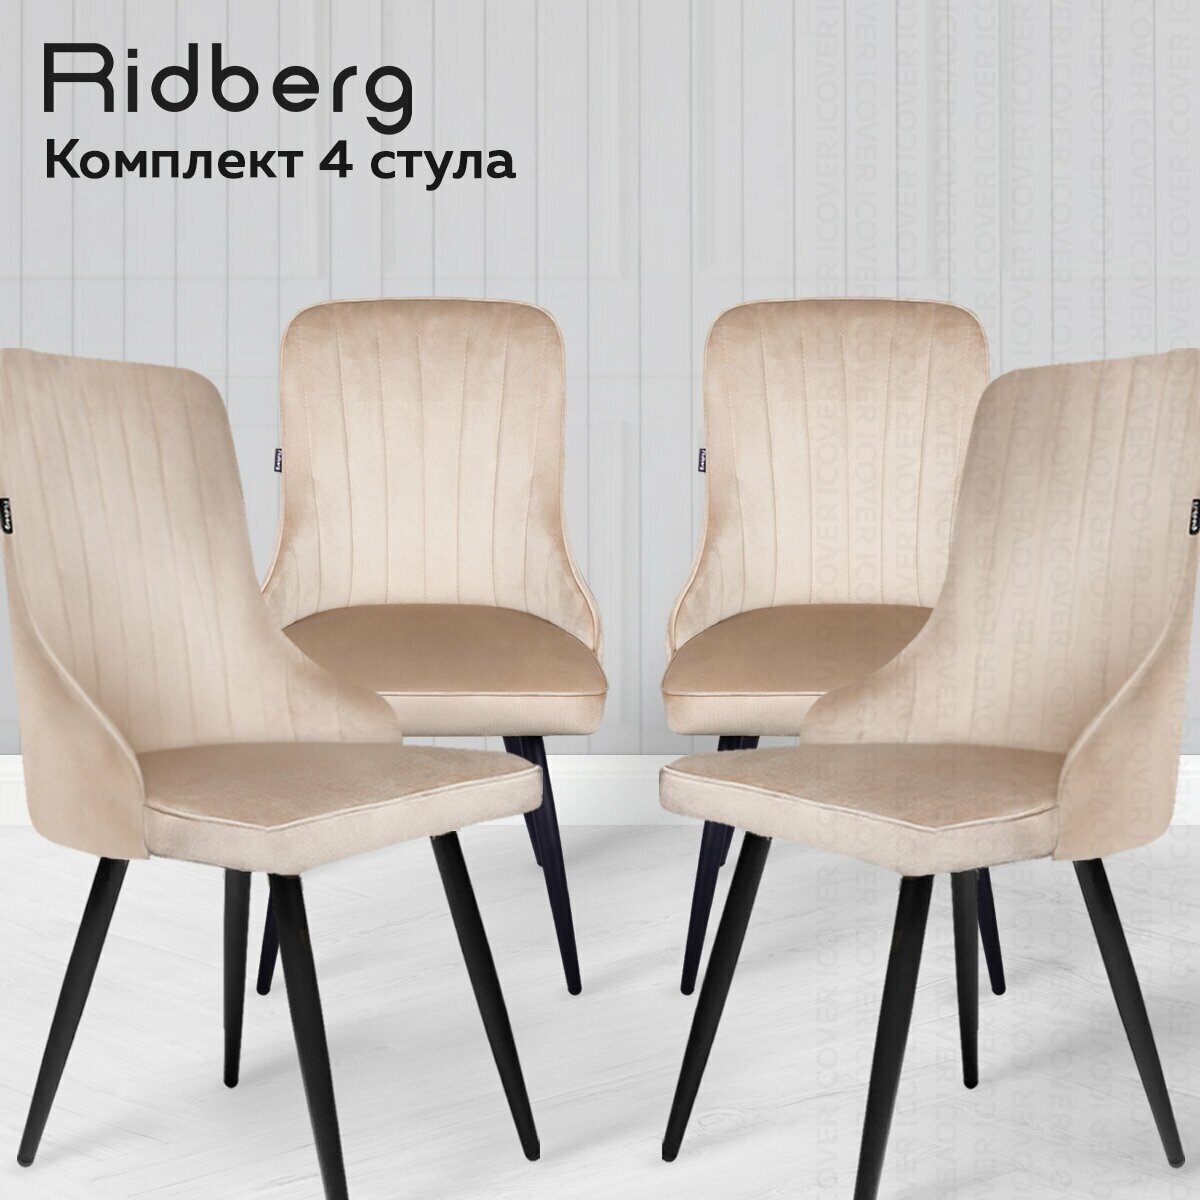 Комплект стульев для кухни и гостиной Ridberg Лондон Velour, 4шт, бежевые, для дома, обеденный стул мягкий с боковой поддержкой спины - фотография № 13